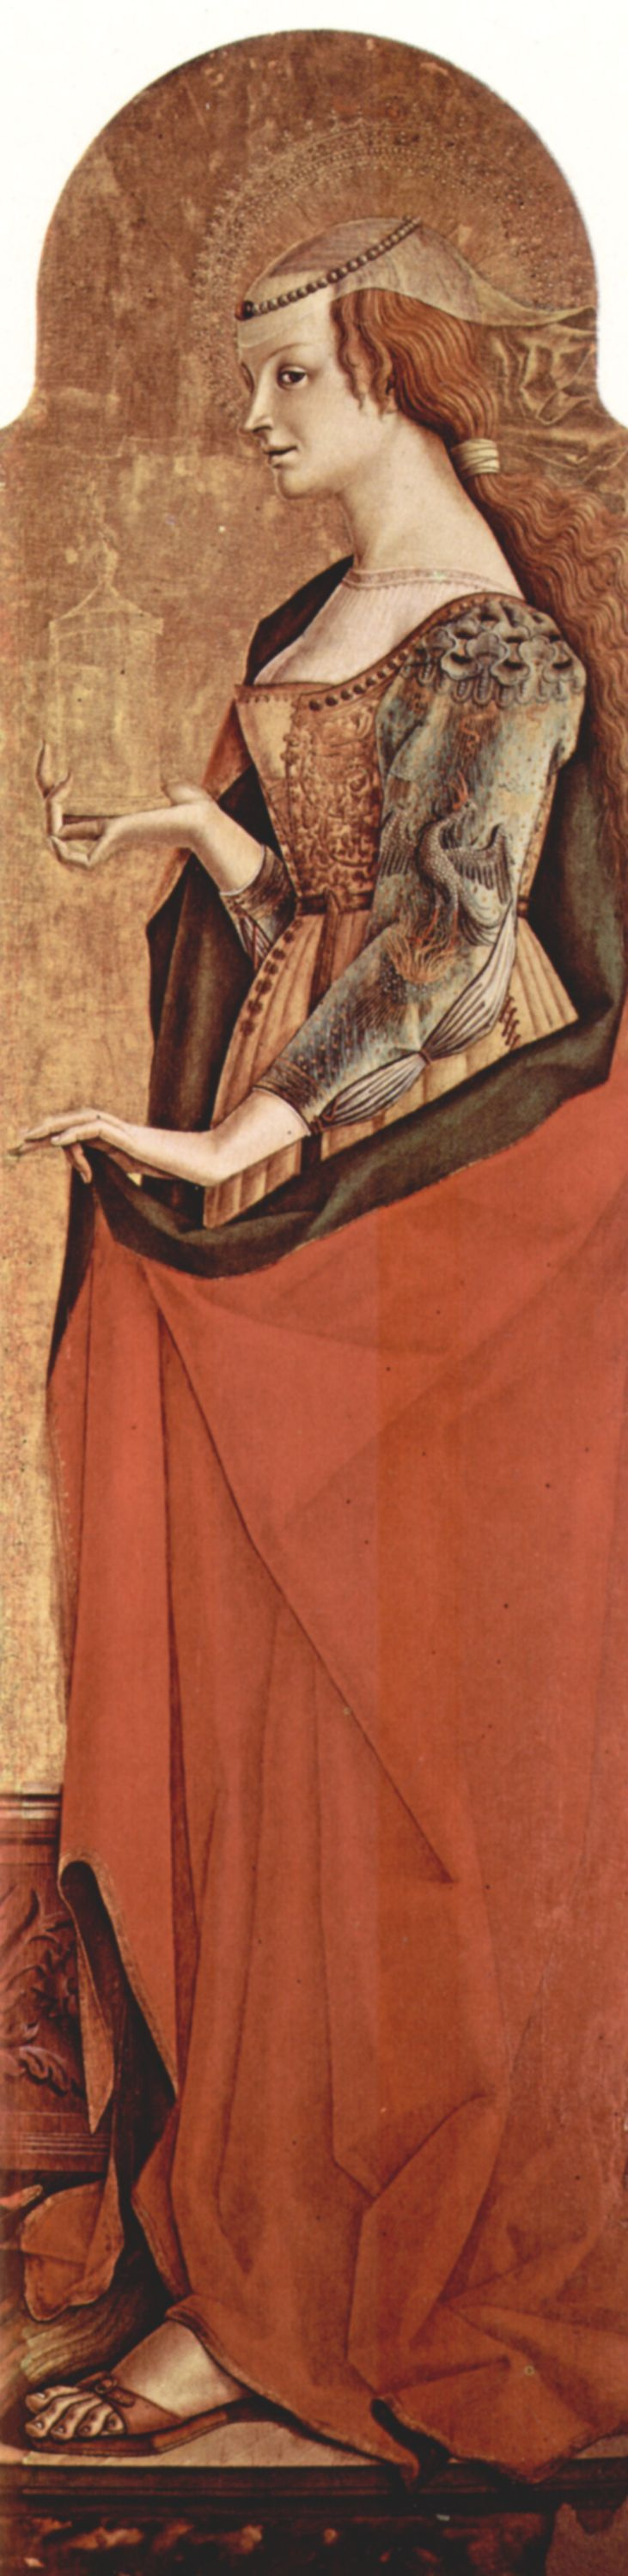 Карло Кривелли. Святая Мария Магдалина. Алтарный полиптих церкви Сан Франческо в Монтефиоре дель Ассо, правая створка внешняя сторона